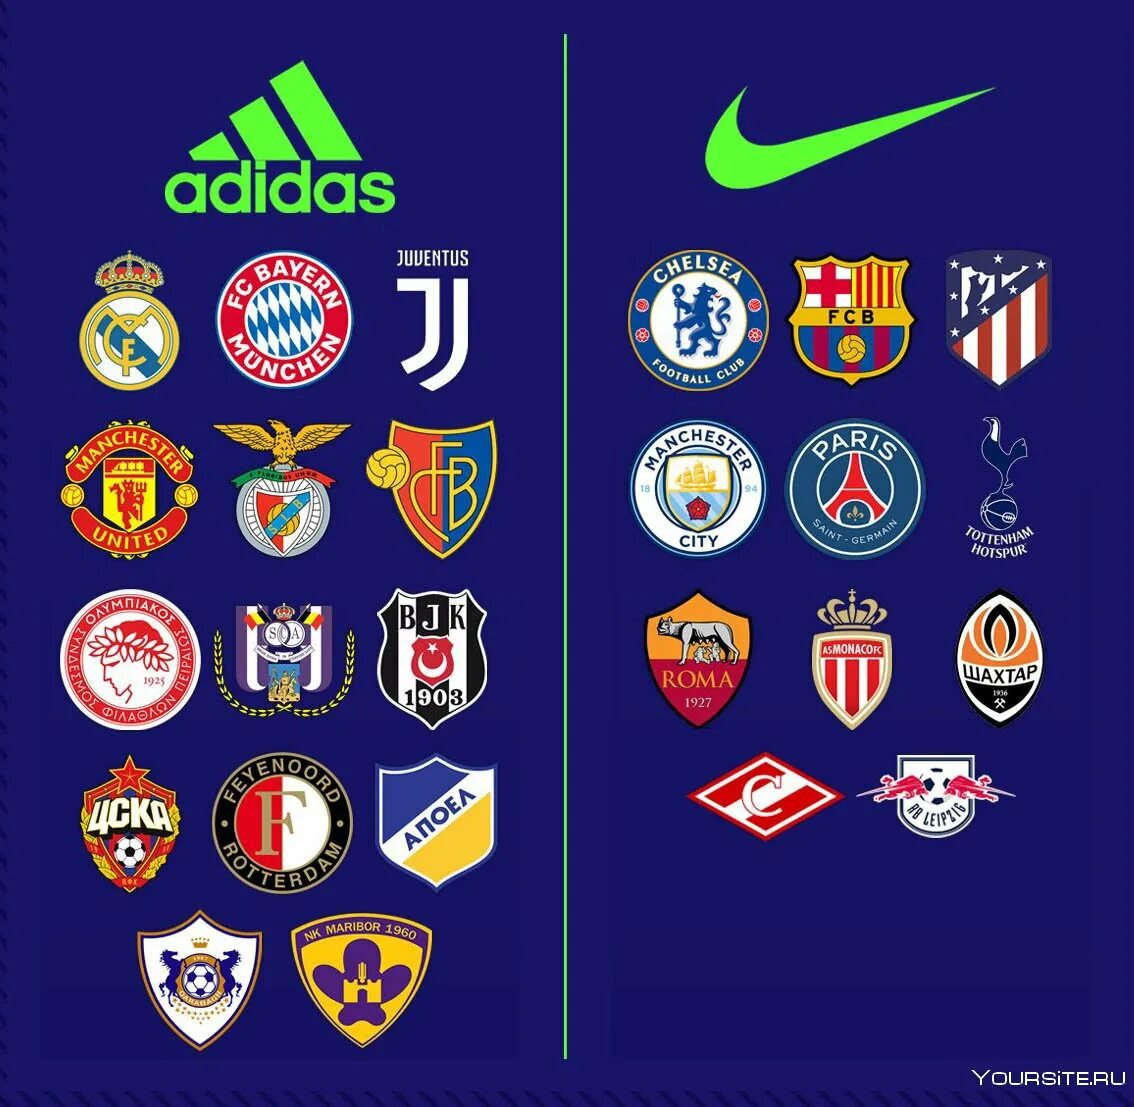 Футбольный клуб. Эмблемы футбольных команд. Логотипы футбольных клубов. Герб футбольного клуба. Полное название клуба